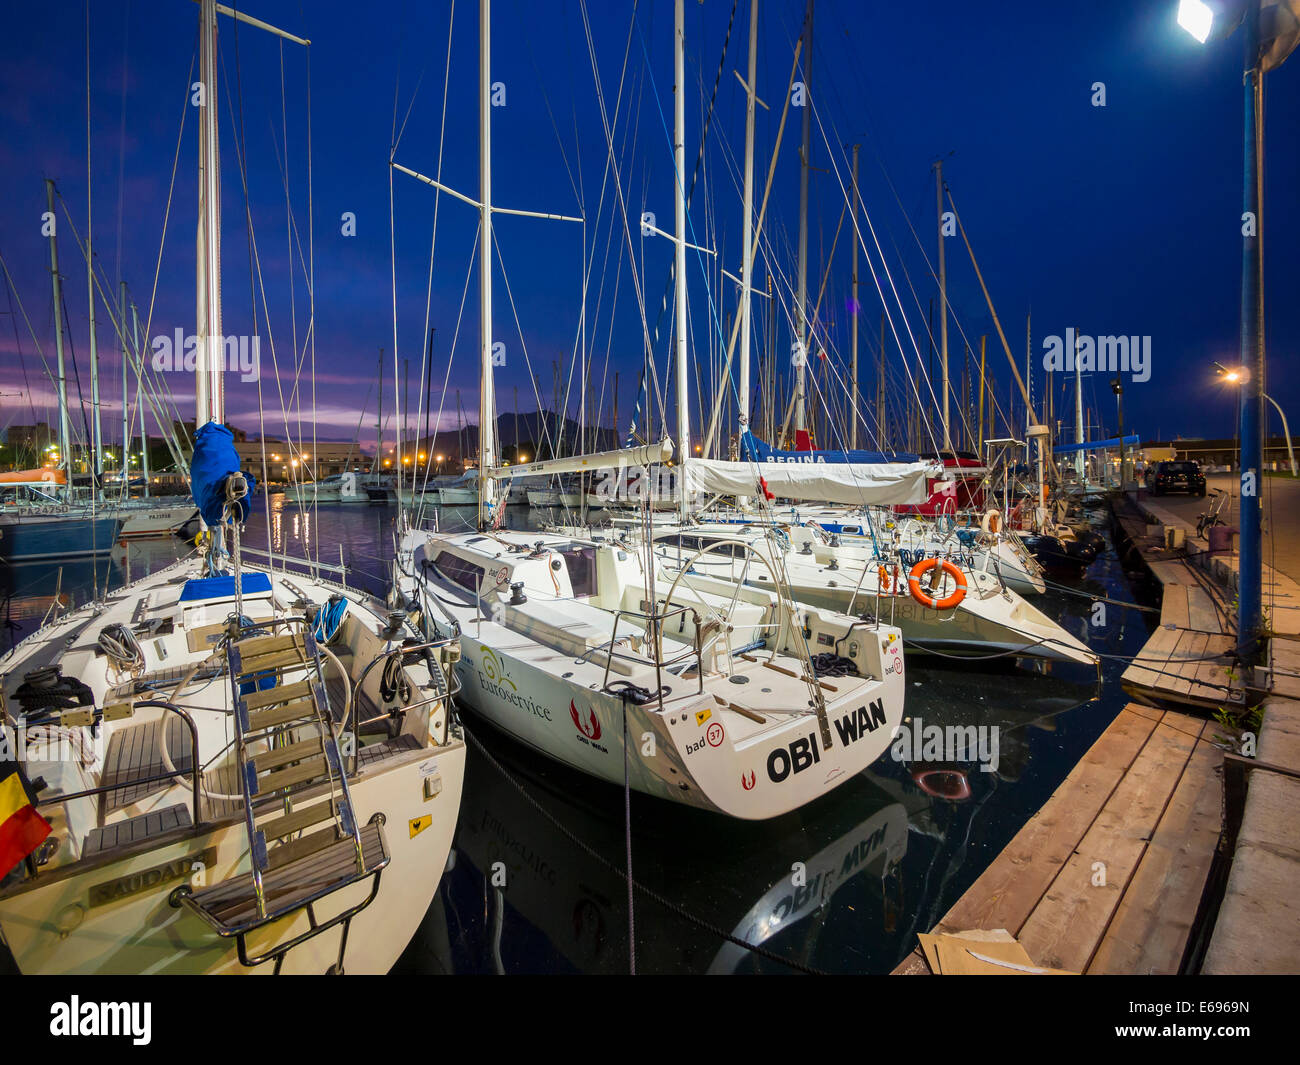 Fishing harbor with sailboats, Piazza Fonderia, Palermo, Sicily, Italy Stock Photo